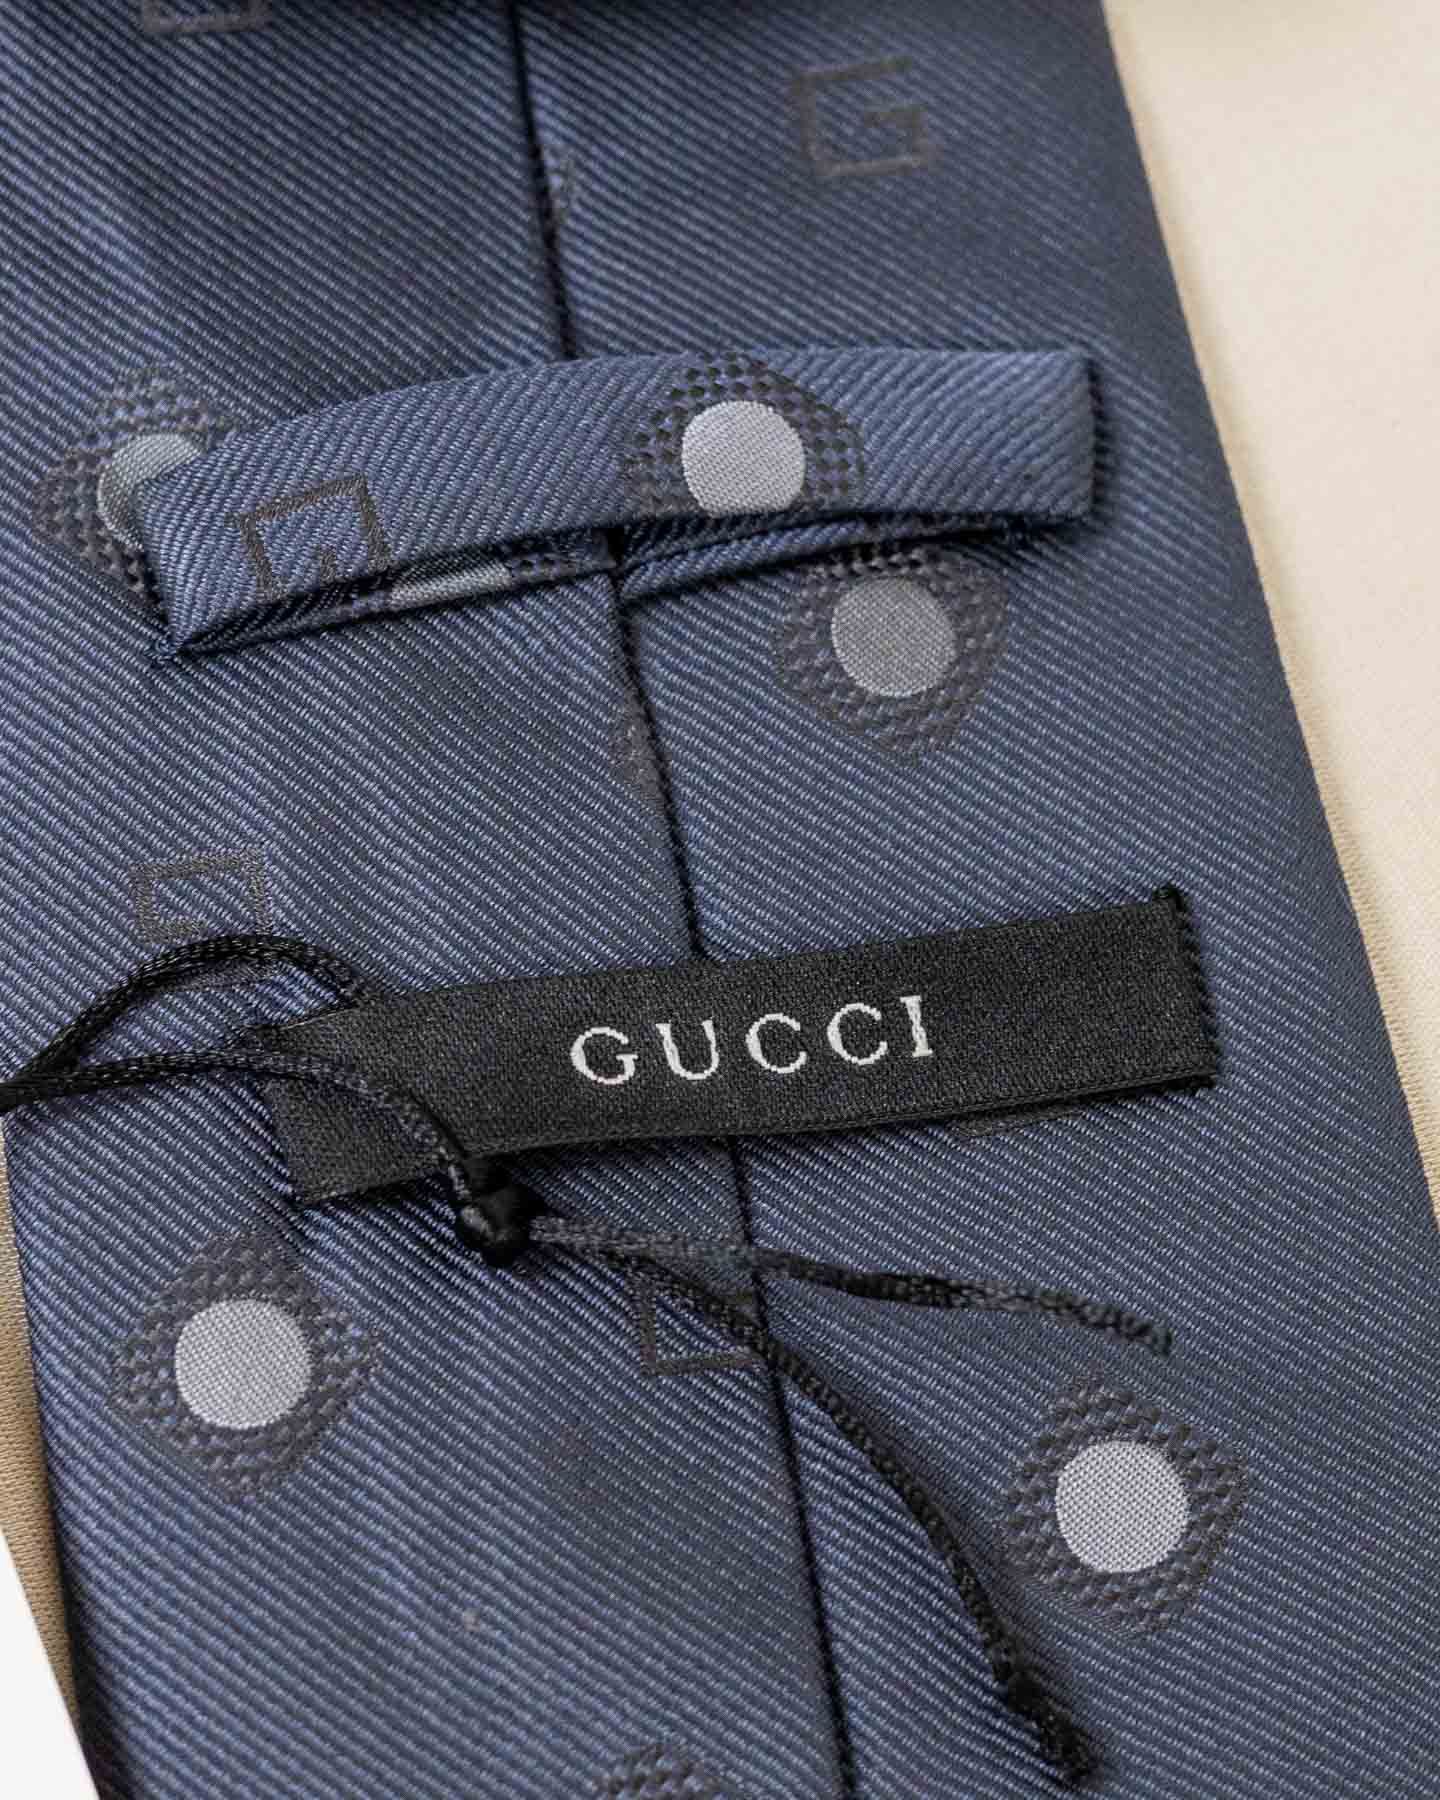 Gucci Gravata Cinza com Bolinhas 